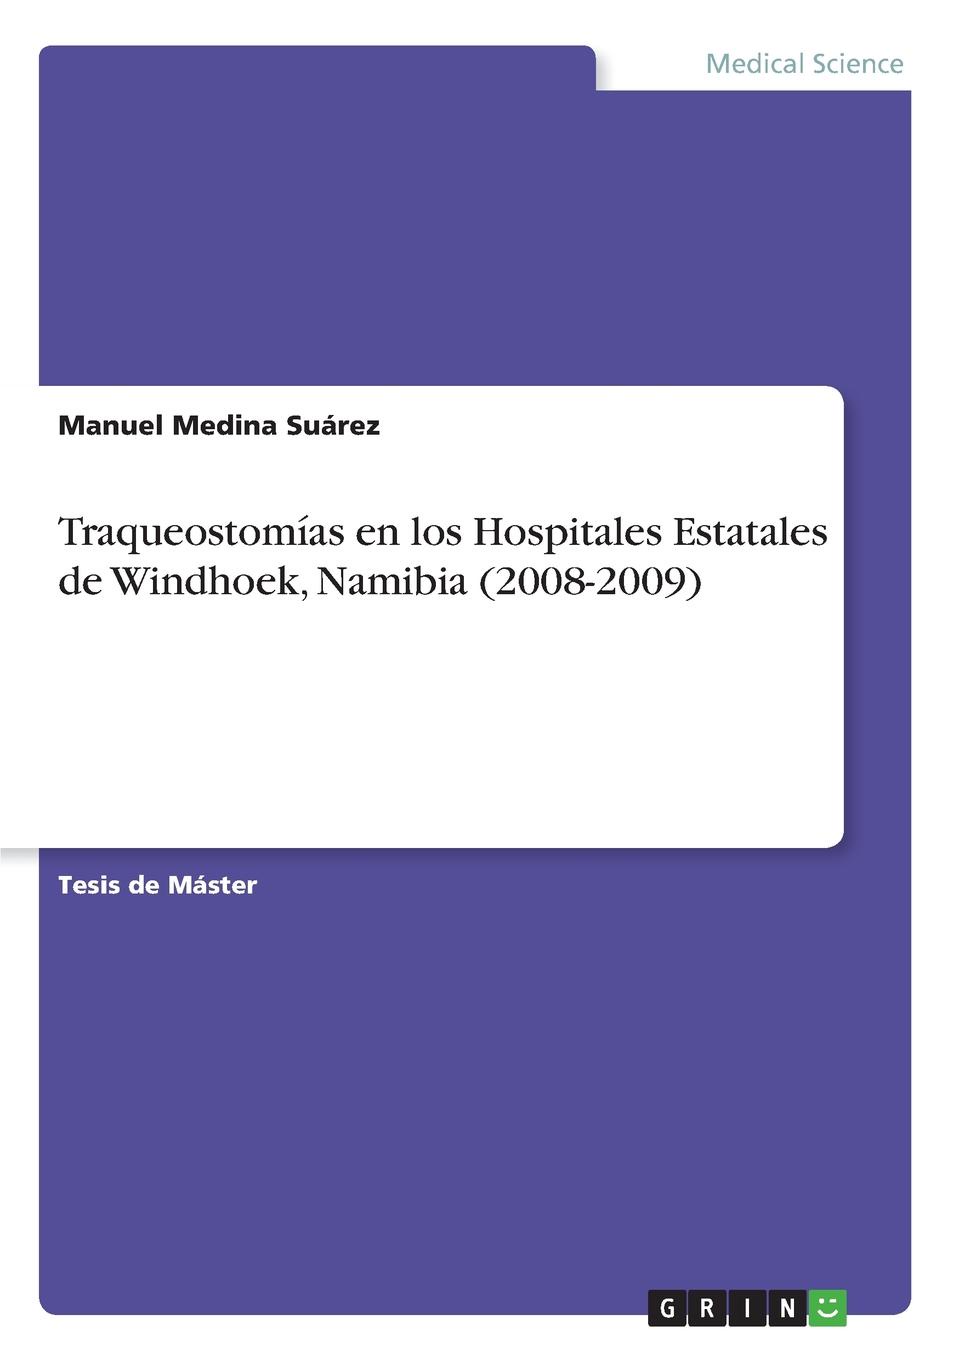 Manuel Medina Suárez Traqueostomias en los Hospitales Estatales de Windhoek, Namibia (2008-2009)